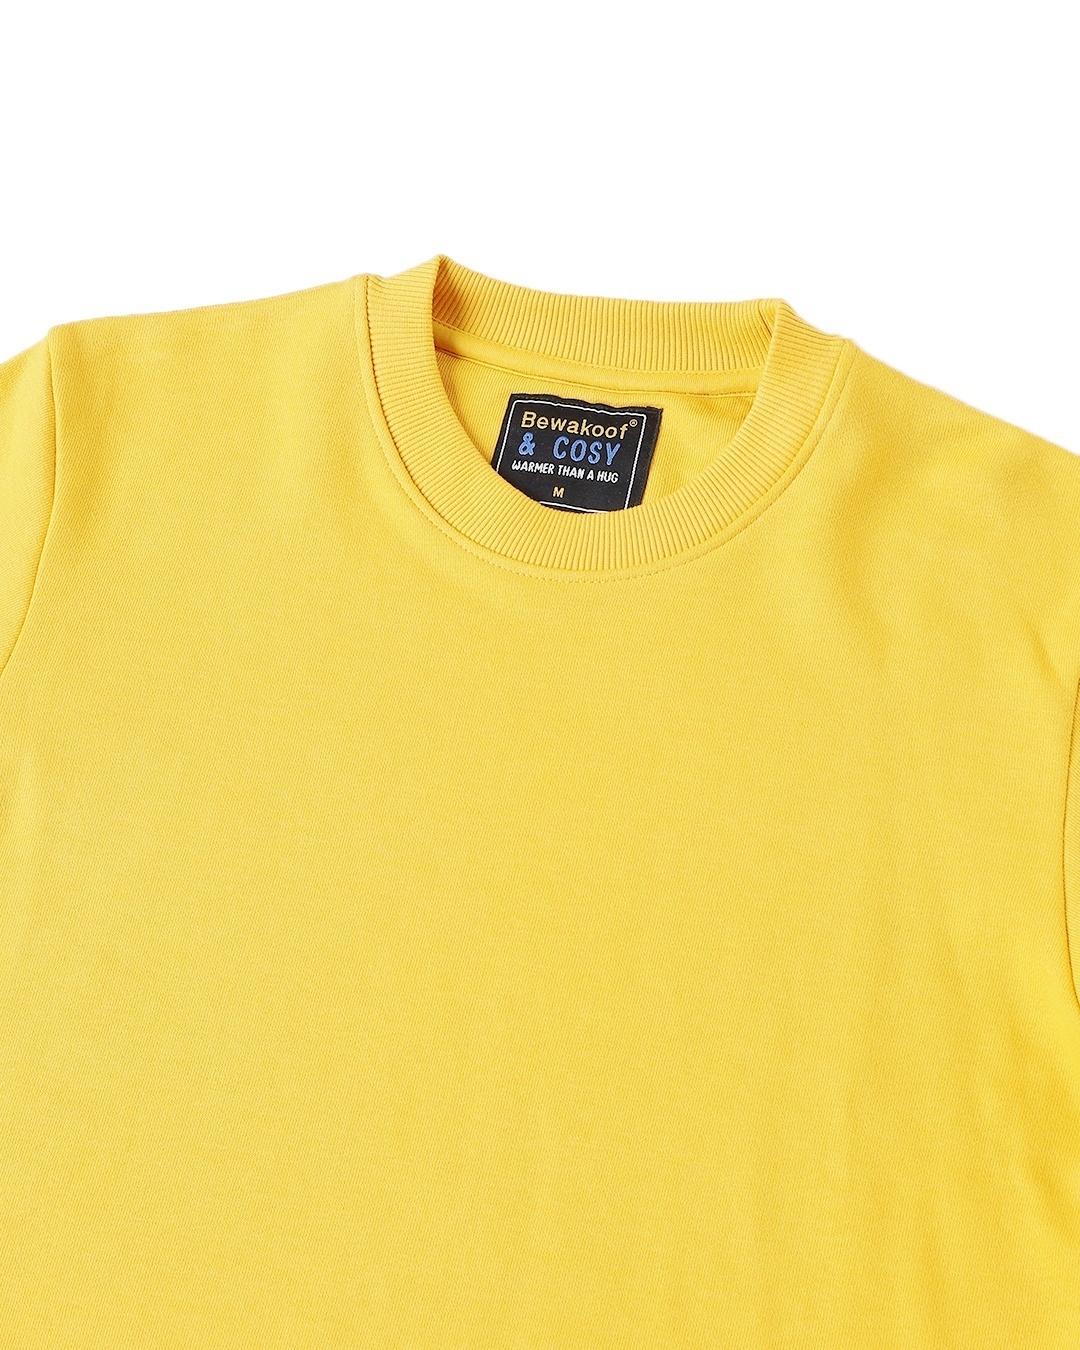 Shop Men's Crewneck Solid Yellow Sweatshirt